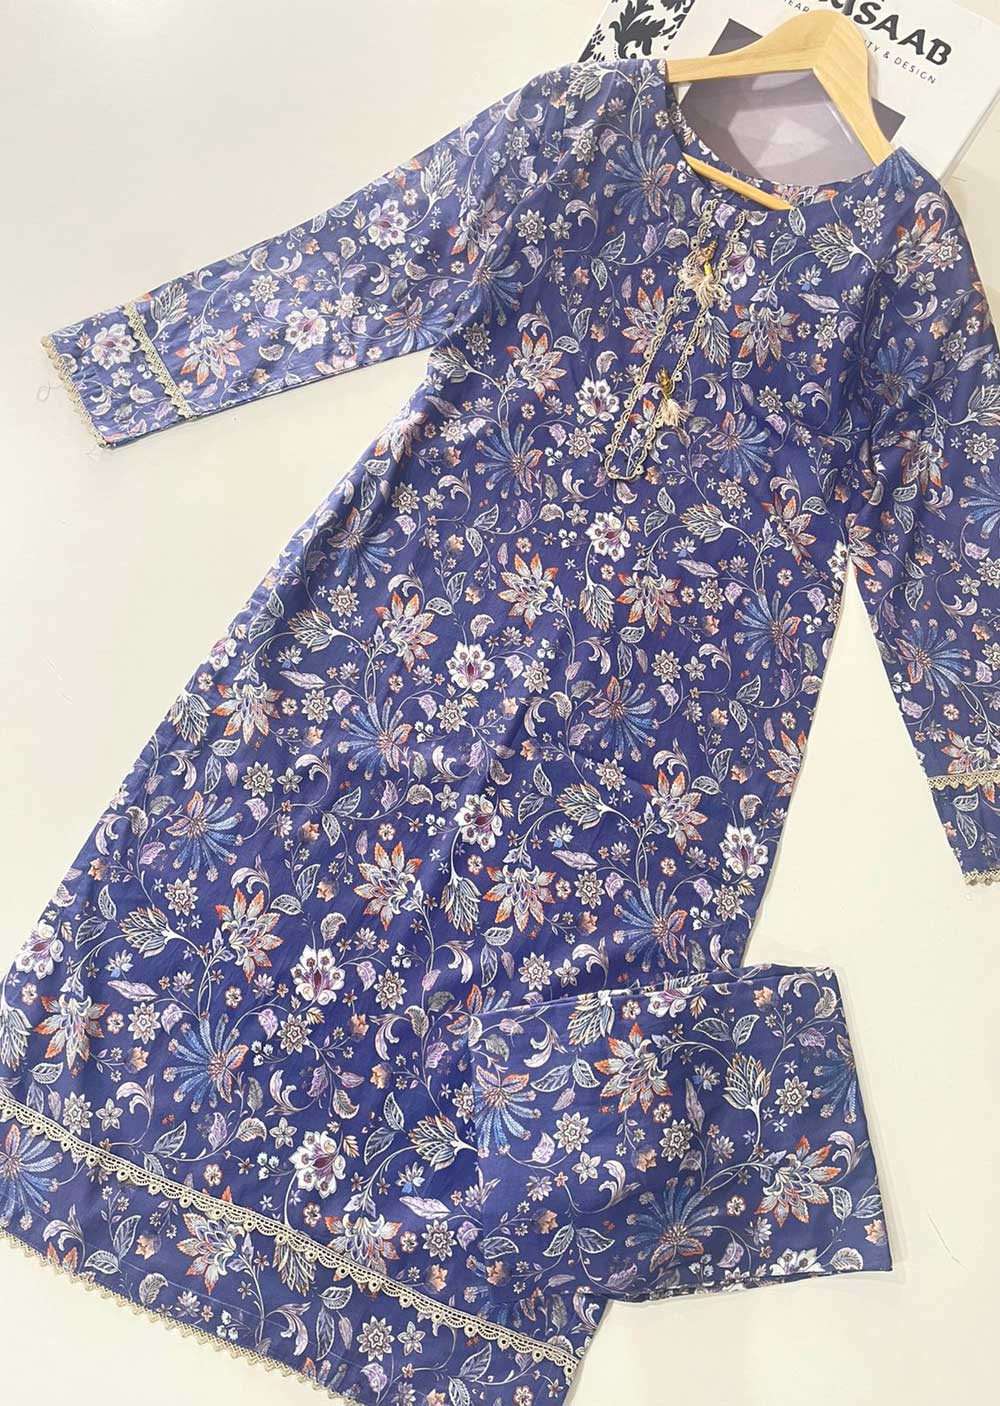 RGZ1210 Readymade Floral Printed Lawn Suit - Memsaab Online